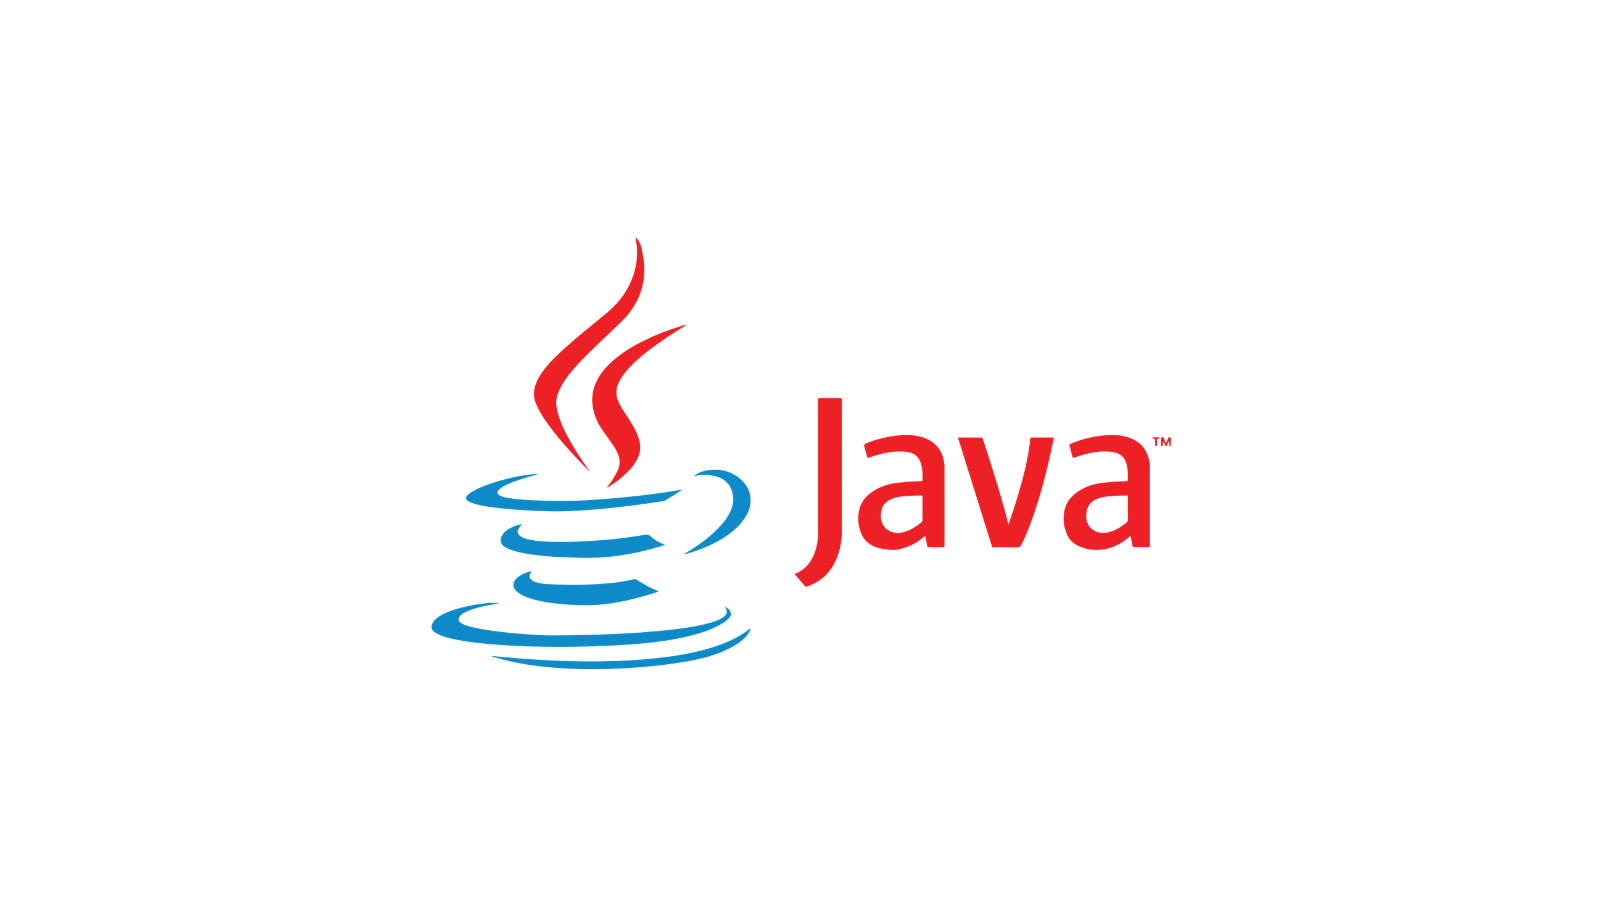 download java jre for windows